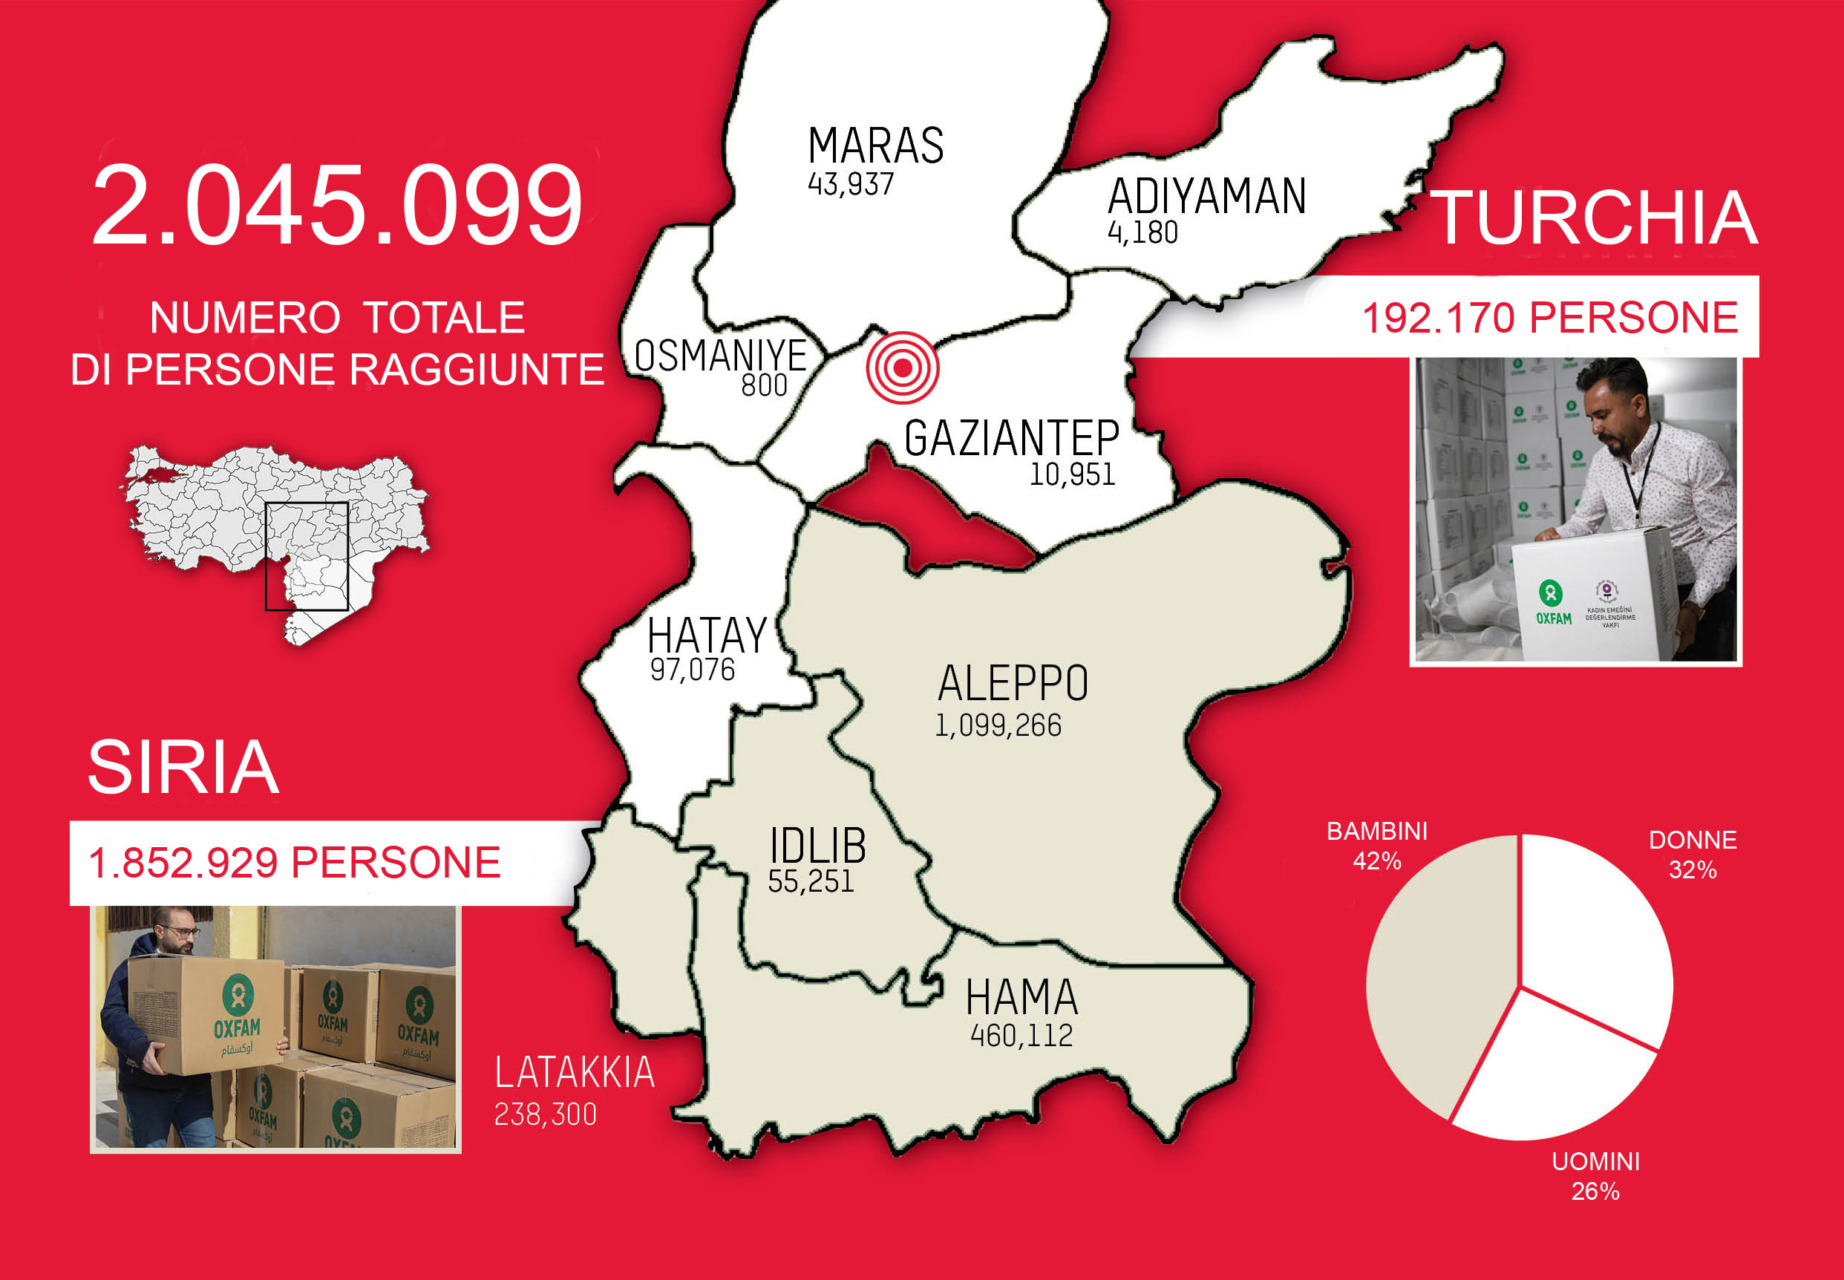 Abbiamo portato aiuti a 2 milioni di persone dopo il terremoto in Turchia e Siria